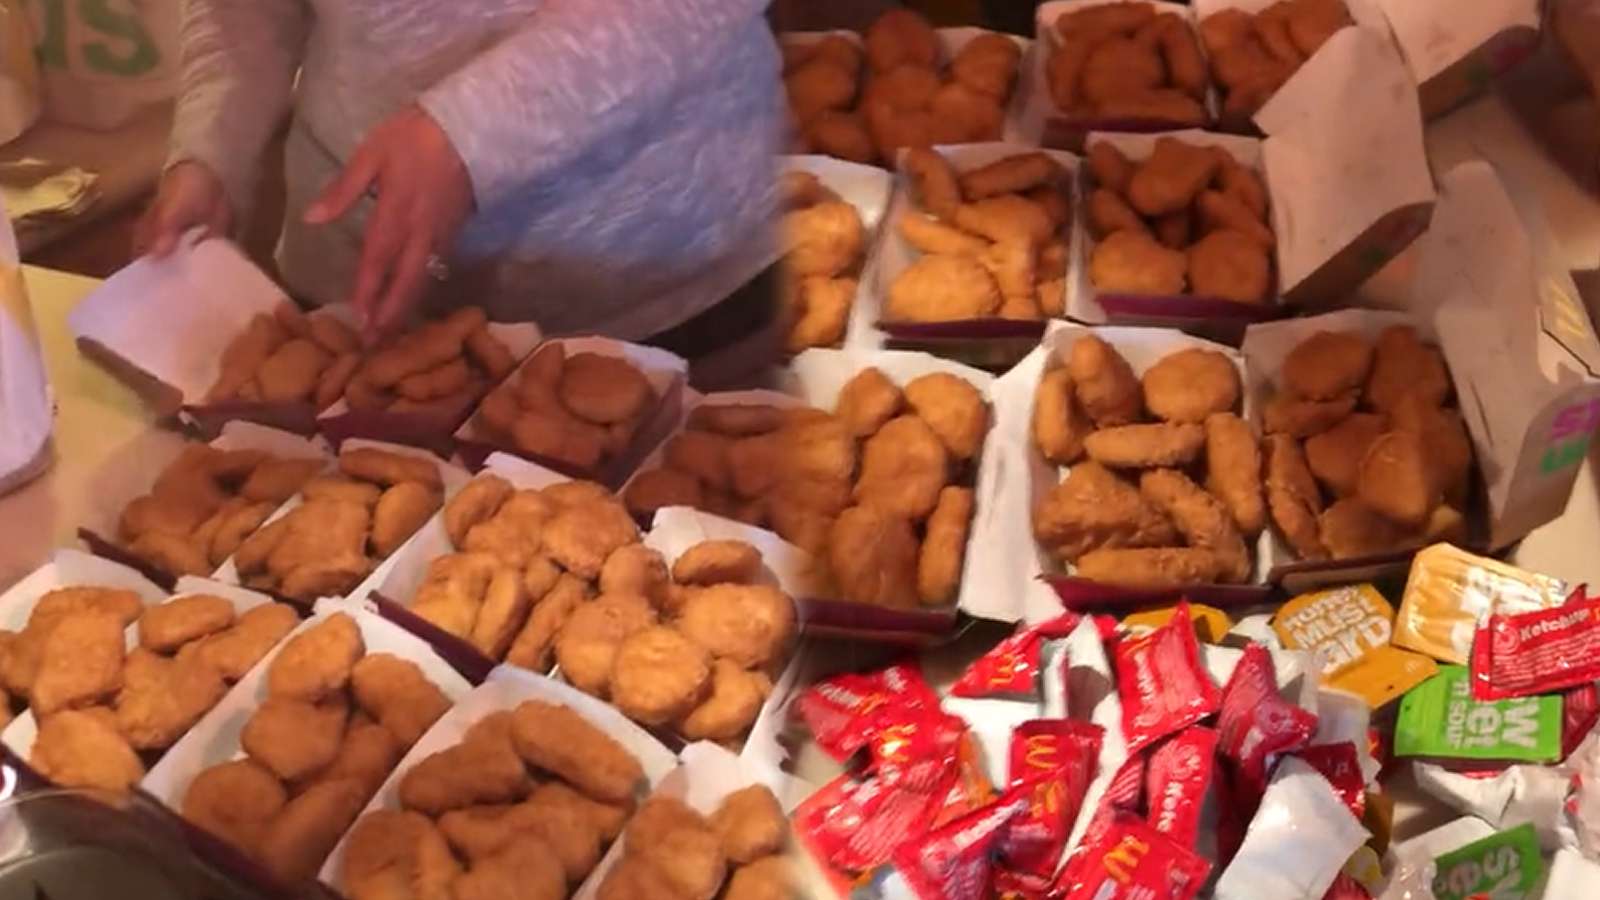 Man's DoorDash order goes viral after 200 nuggets are delivered instead of 20